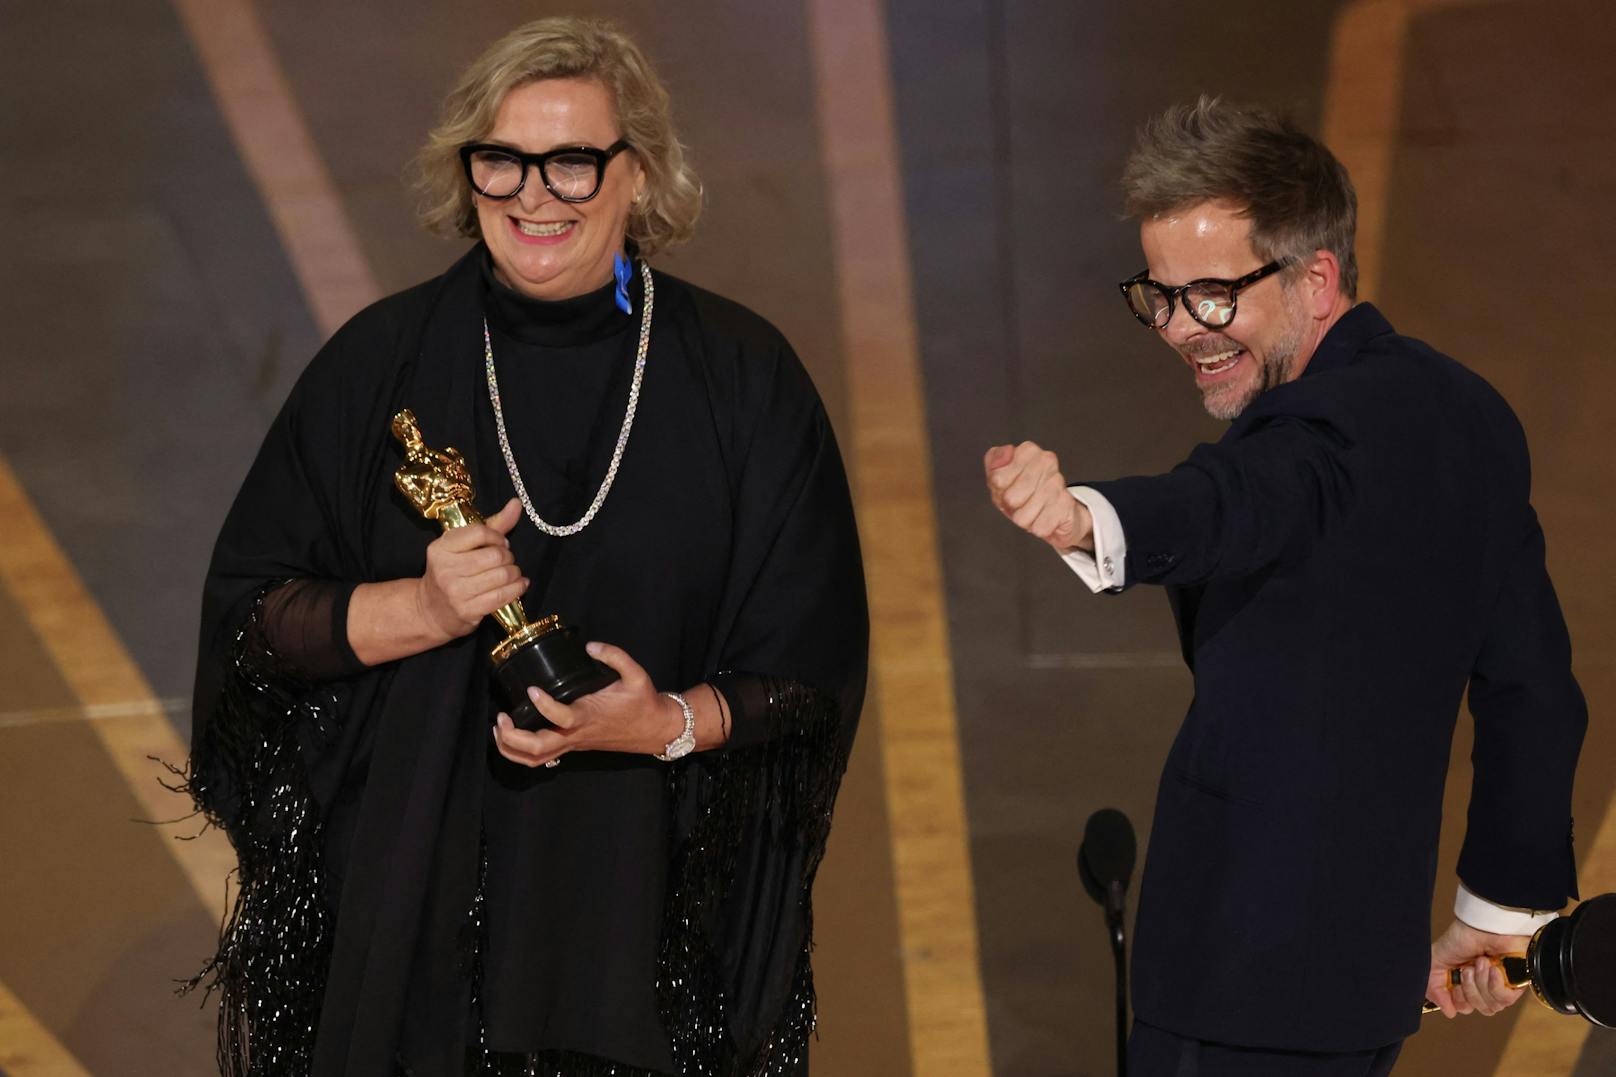 Christian M. Goldbeck und Ernestine Hipper nehmen den Oscar für "Bestes Szenenbild" entgegen. ("Im Westen nichts Neues")